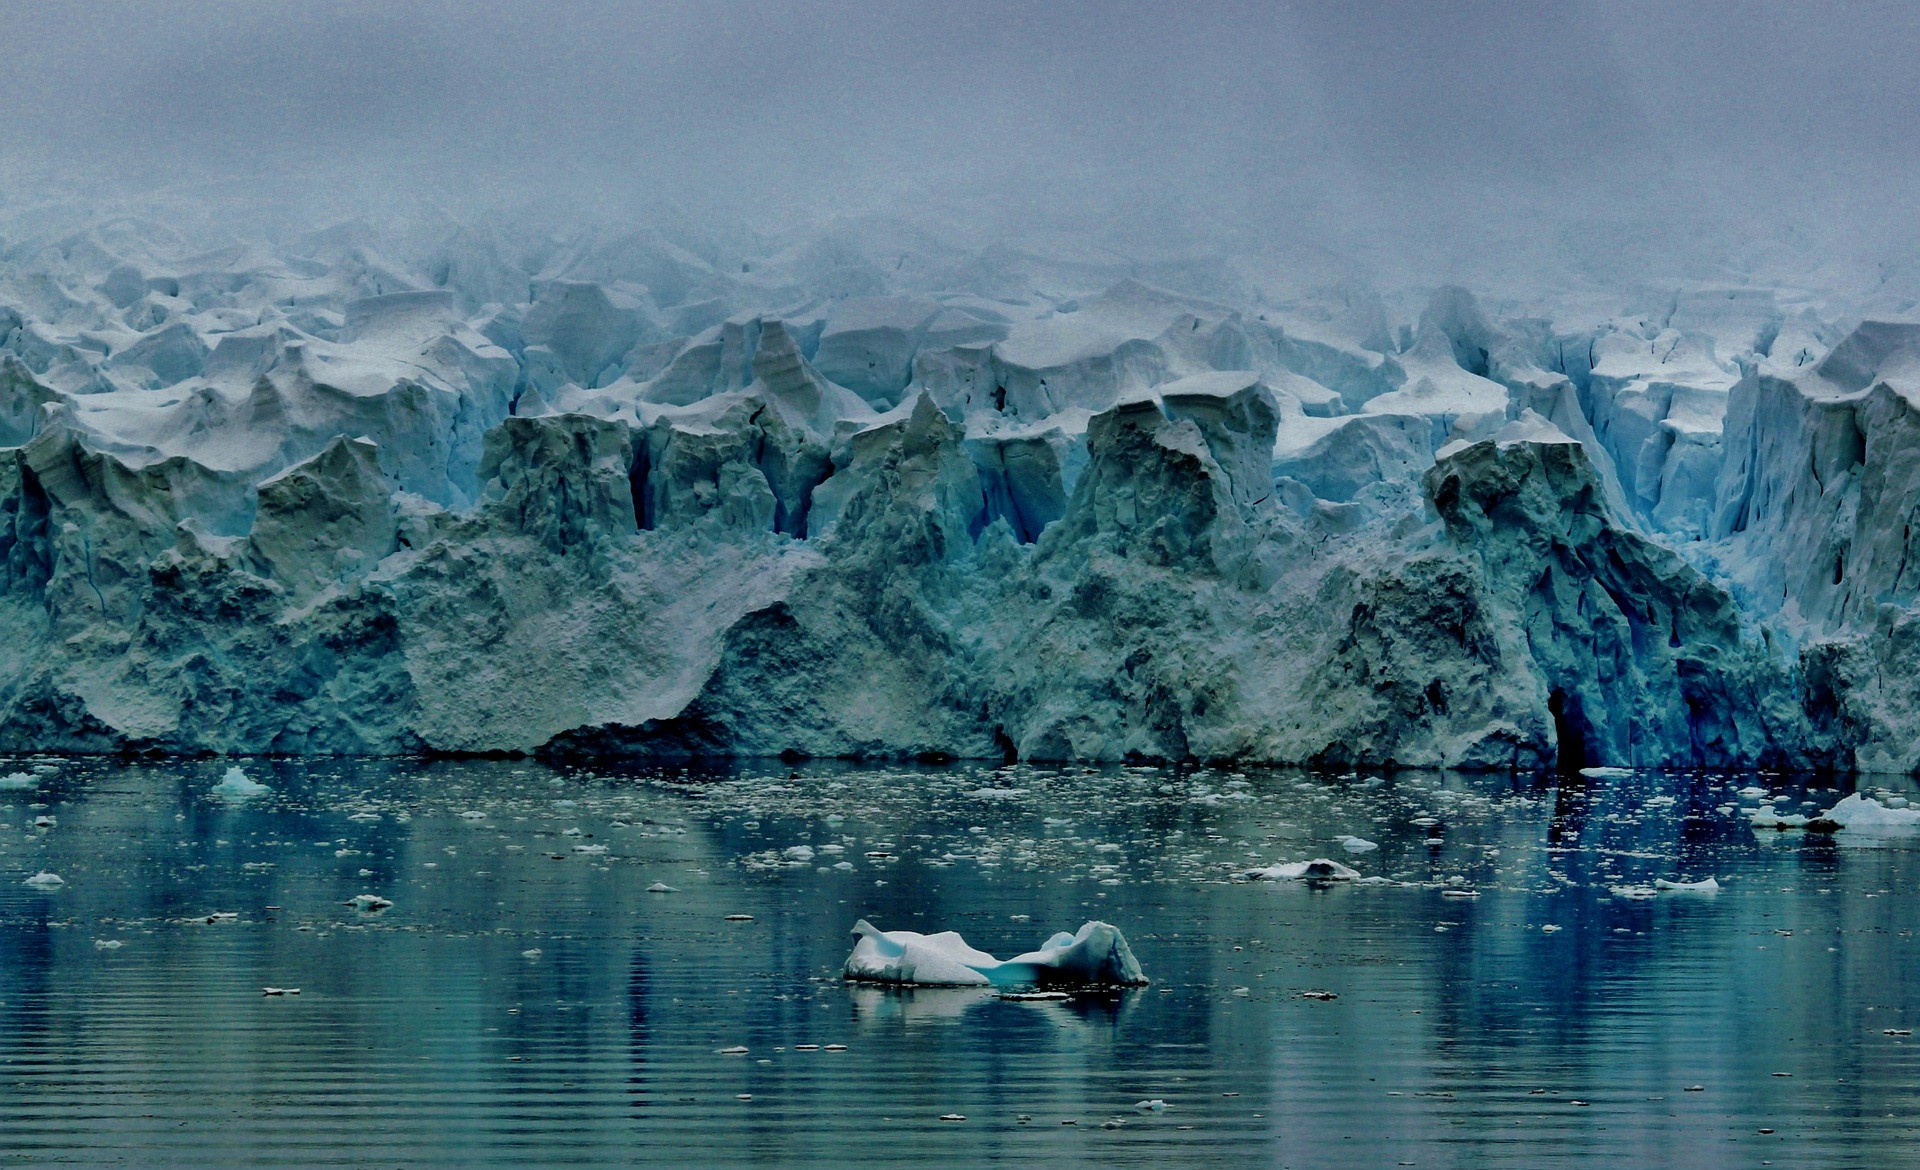 기후변화로 빙하가 녹는 사진